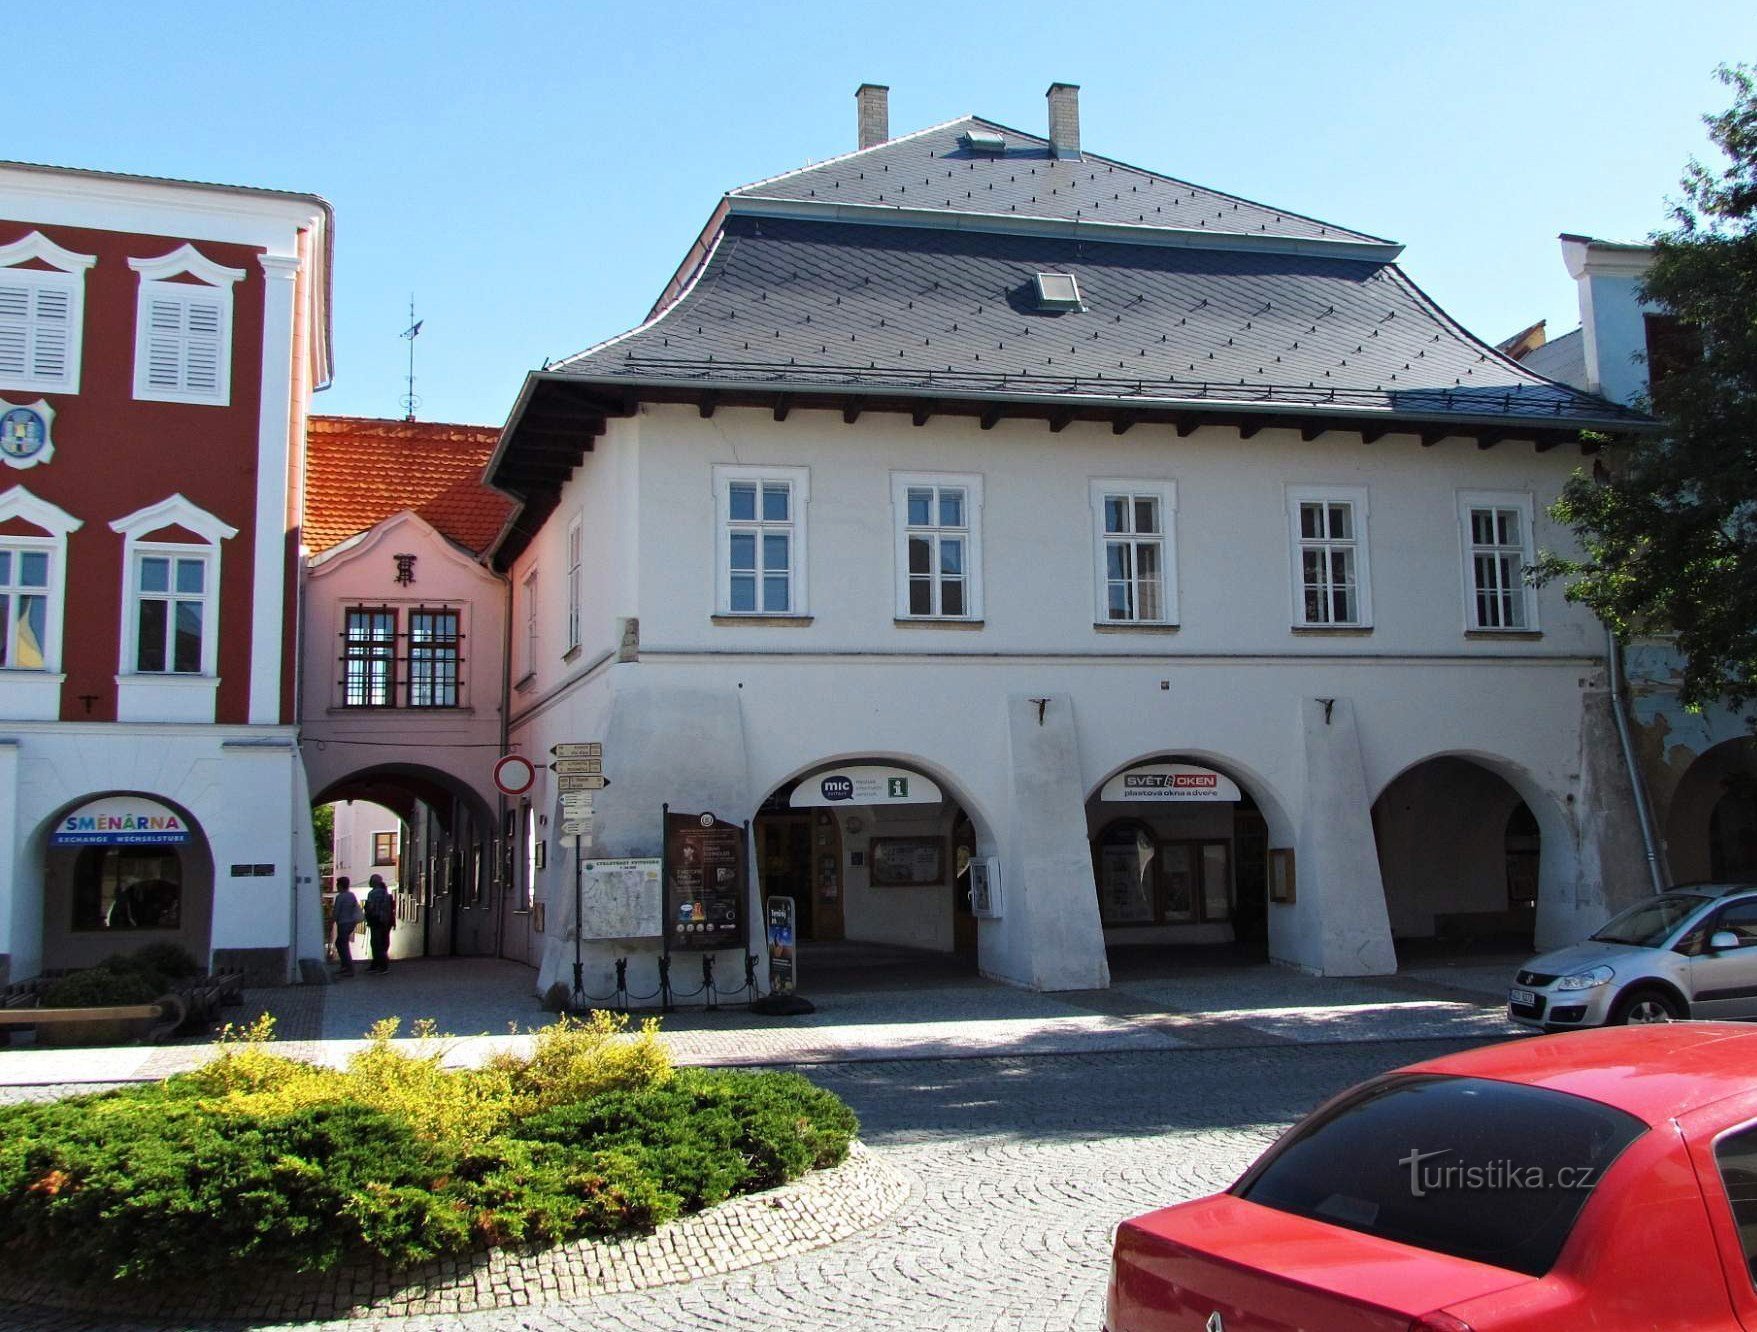 A antiga Câmara Municipal e a casa U Mouřenina na praça de Svitavy